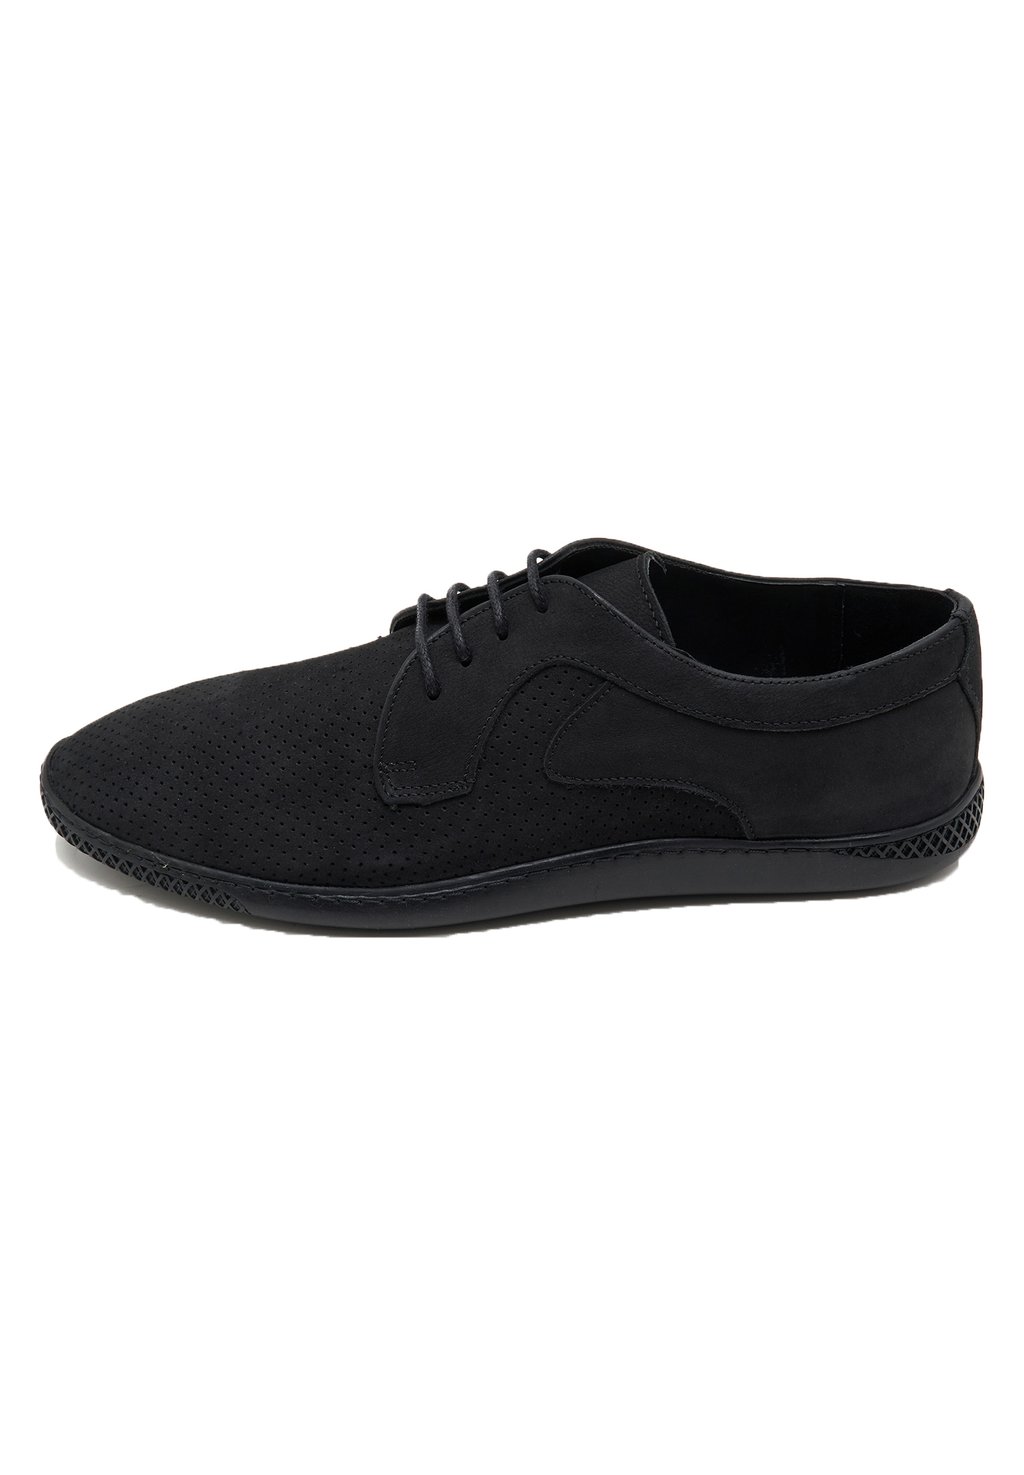 Спортивные туфли на шнуровке DESA, цвет black спортивные туфли на шнуровке desa цвет mink